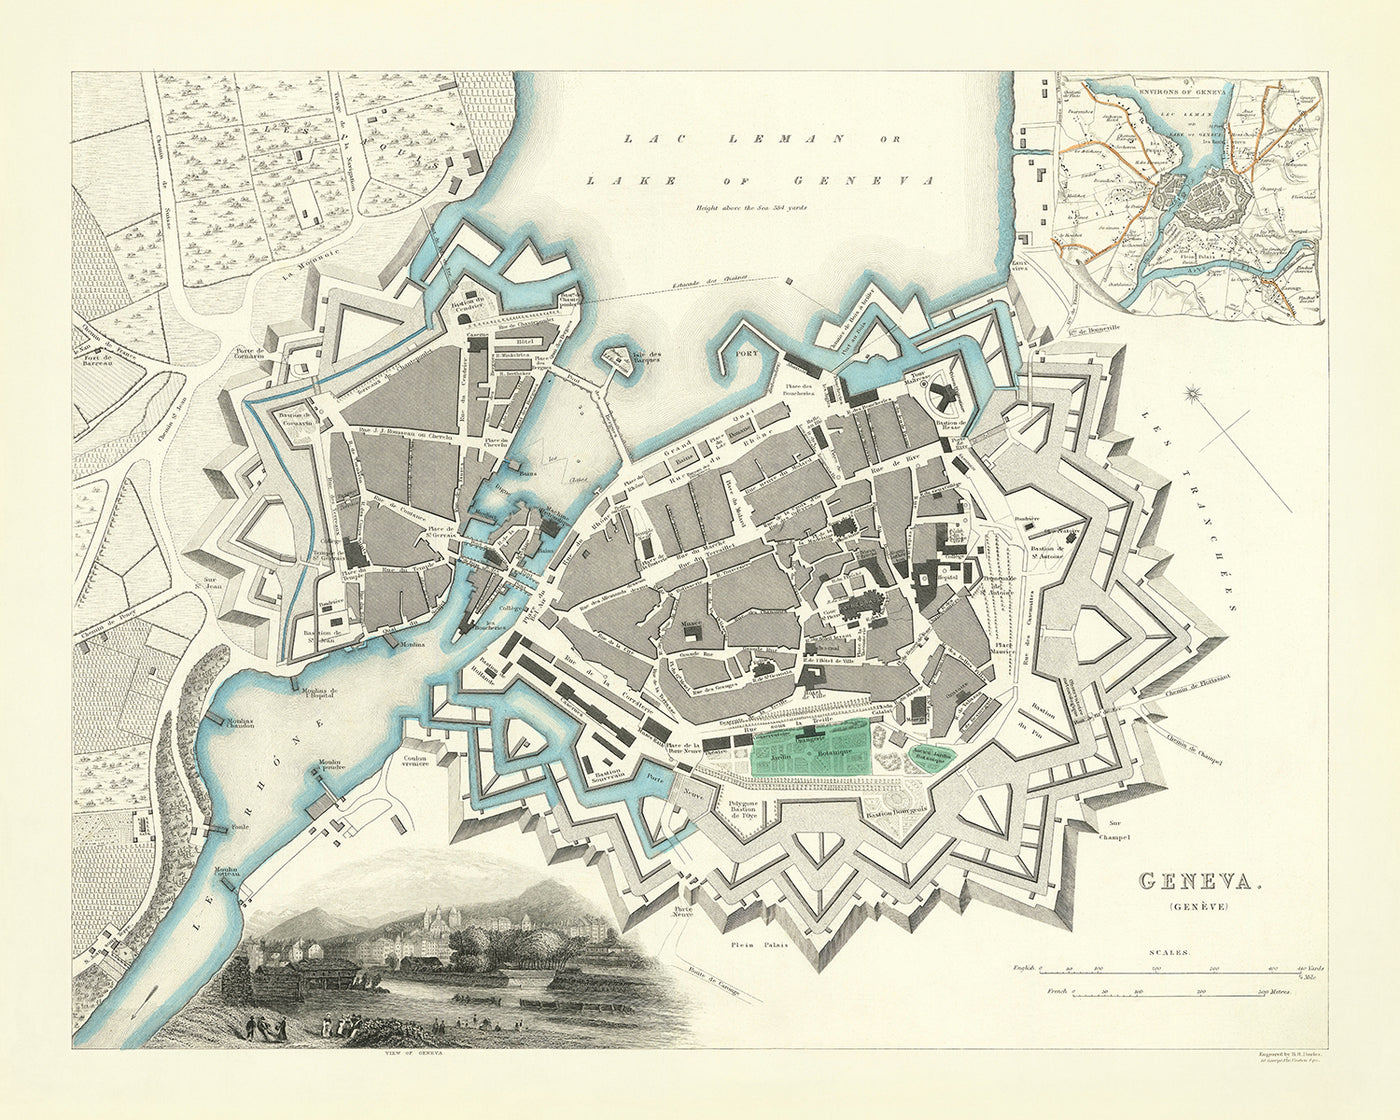 Mapa antiguo de Suiza: Ginebra, 1870: lago de Ginebra, río Ródano, jardín botánico, fortificaciones masivas del fuerte bastión